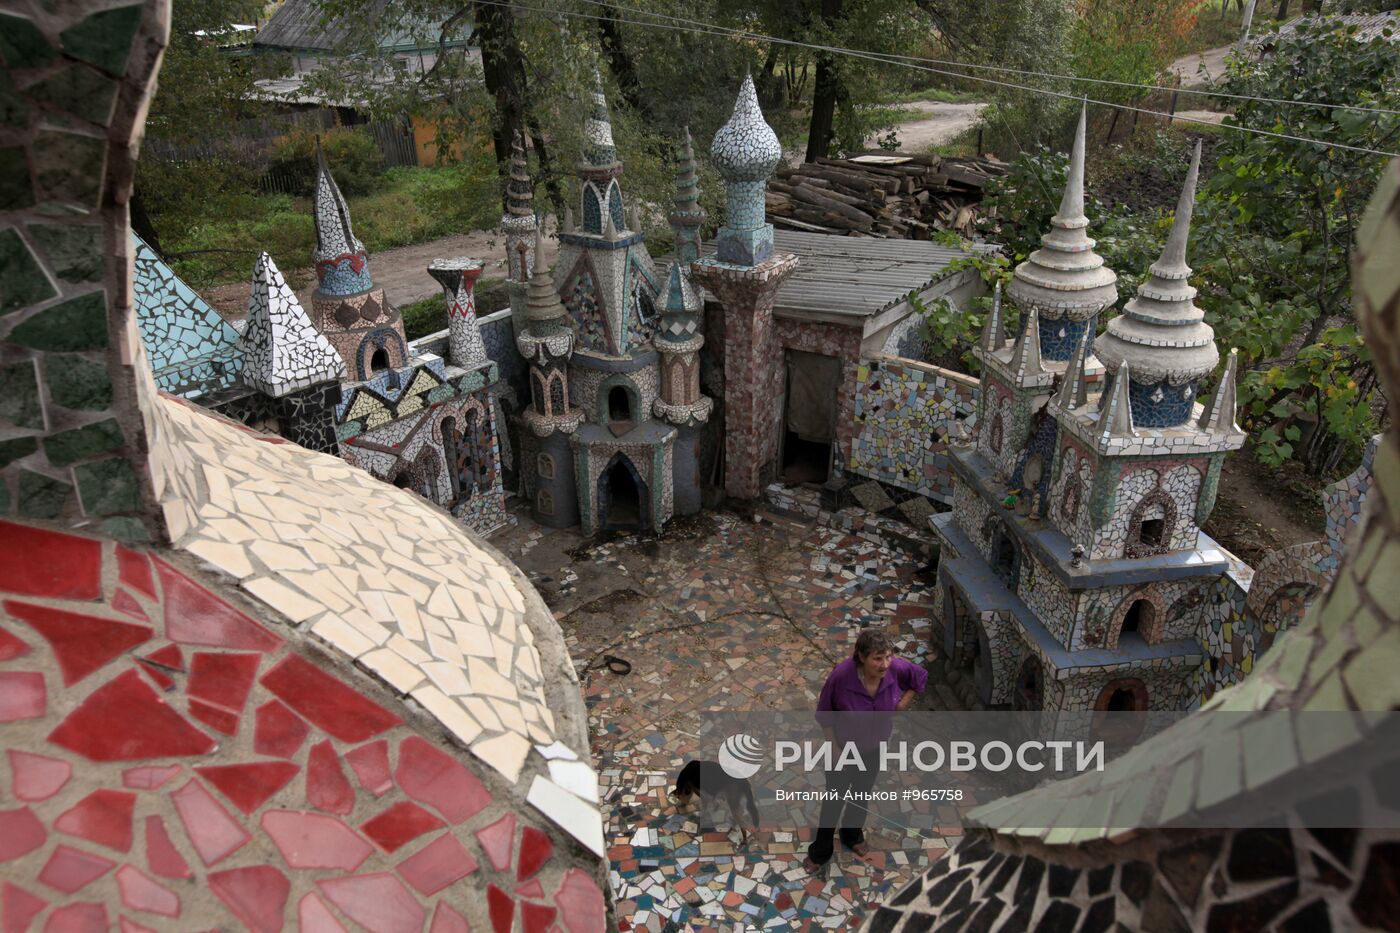 Дворец из строительного мусора в Приморском крае